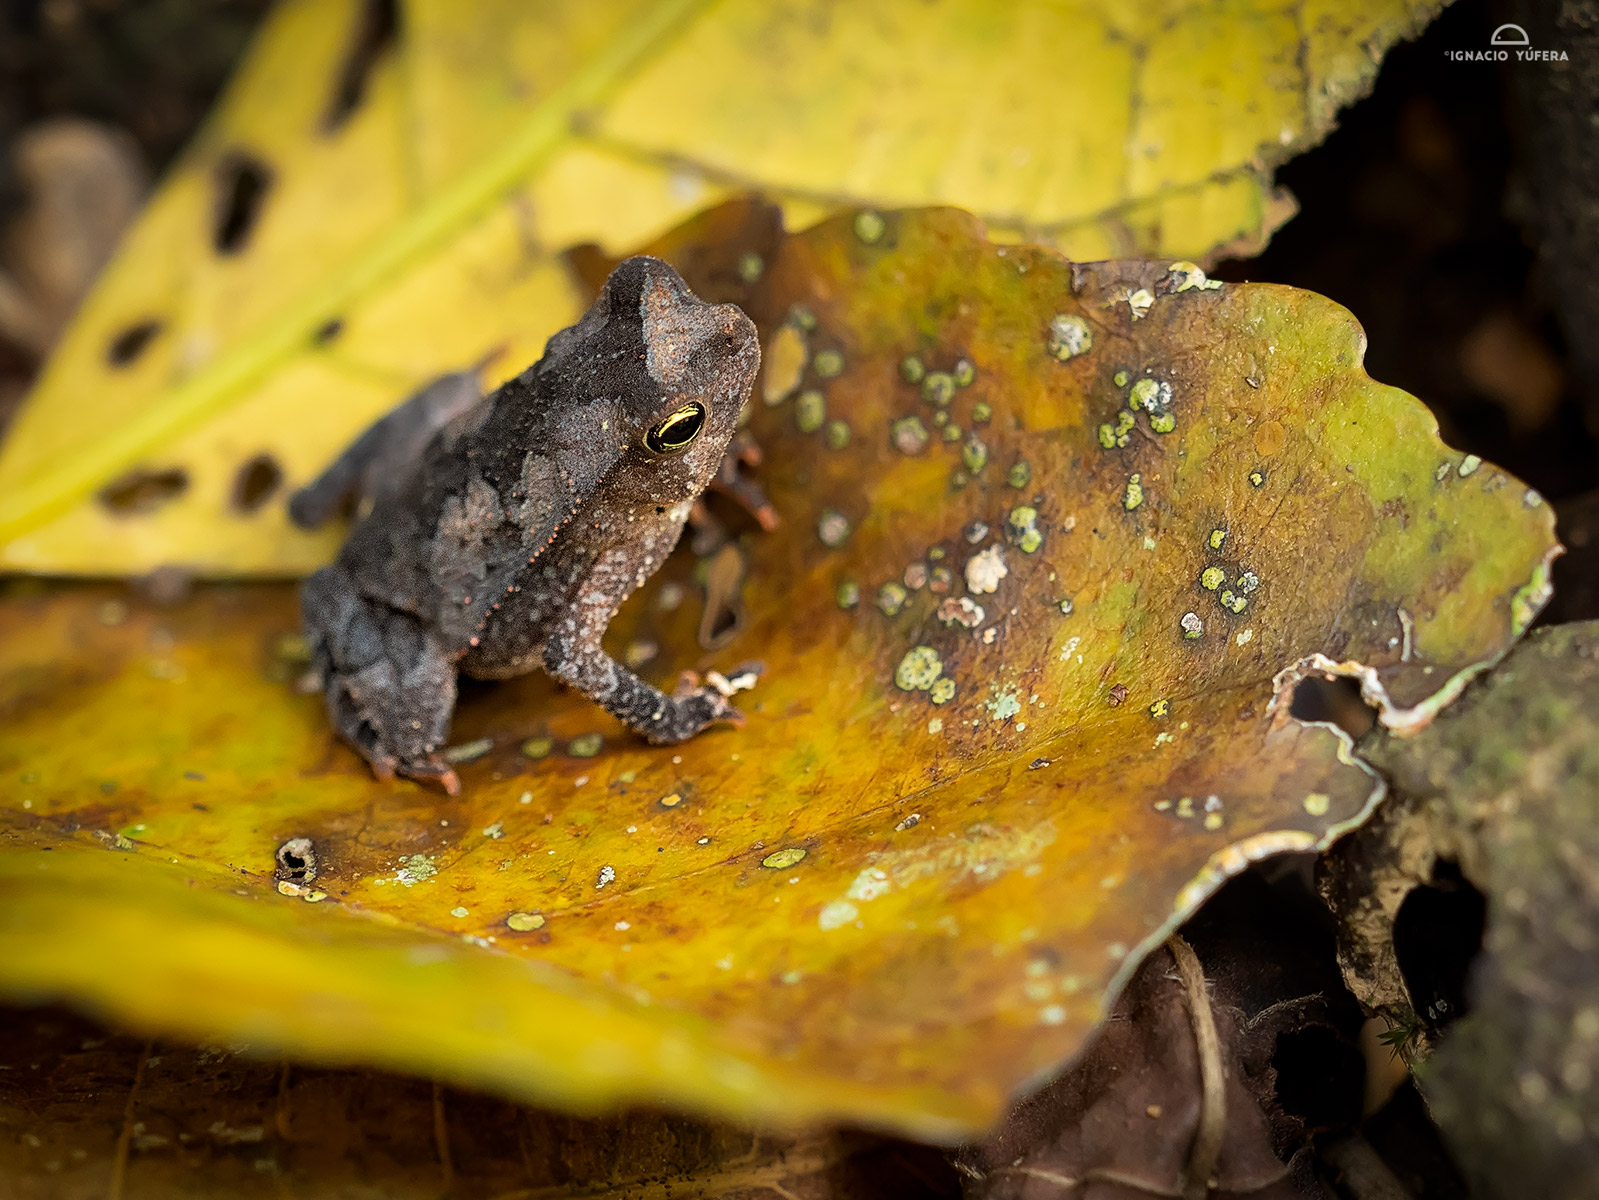 Leaf-litter toad (Rhinella alata), Gamboa, Panama, April